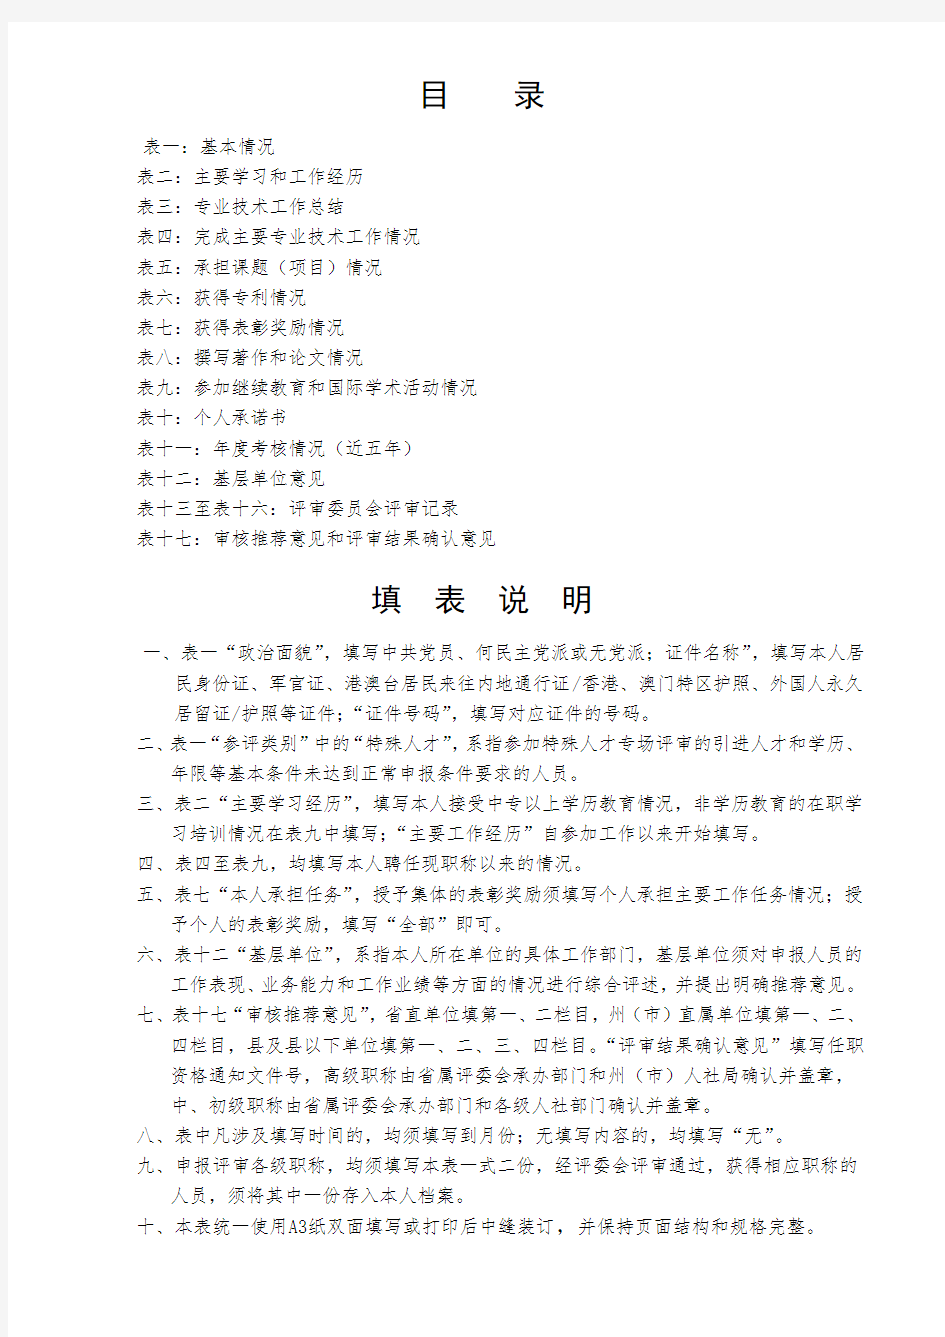 2020年云南省专业技术职称申报评审表(高级工程师)